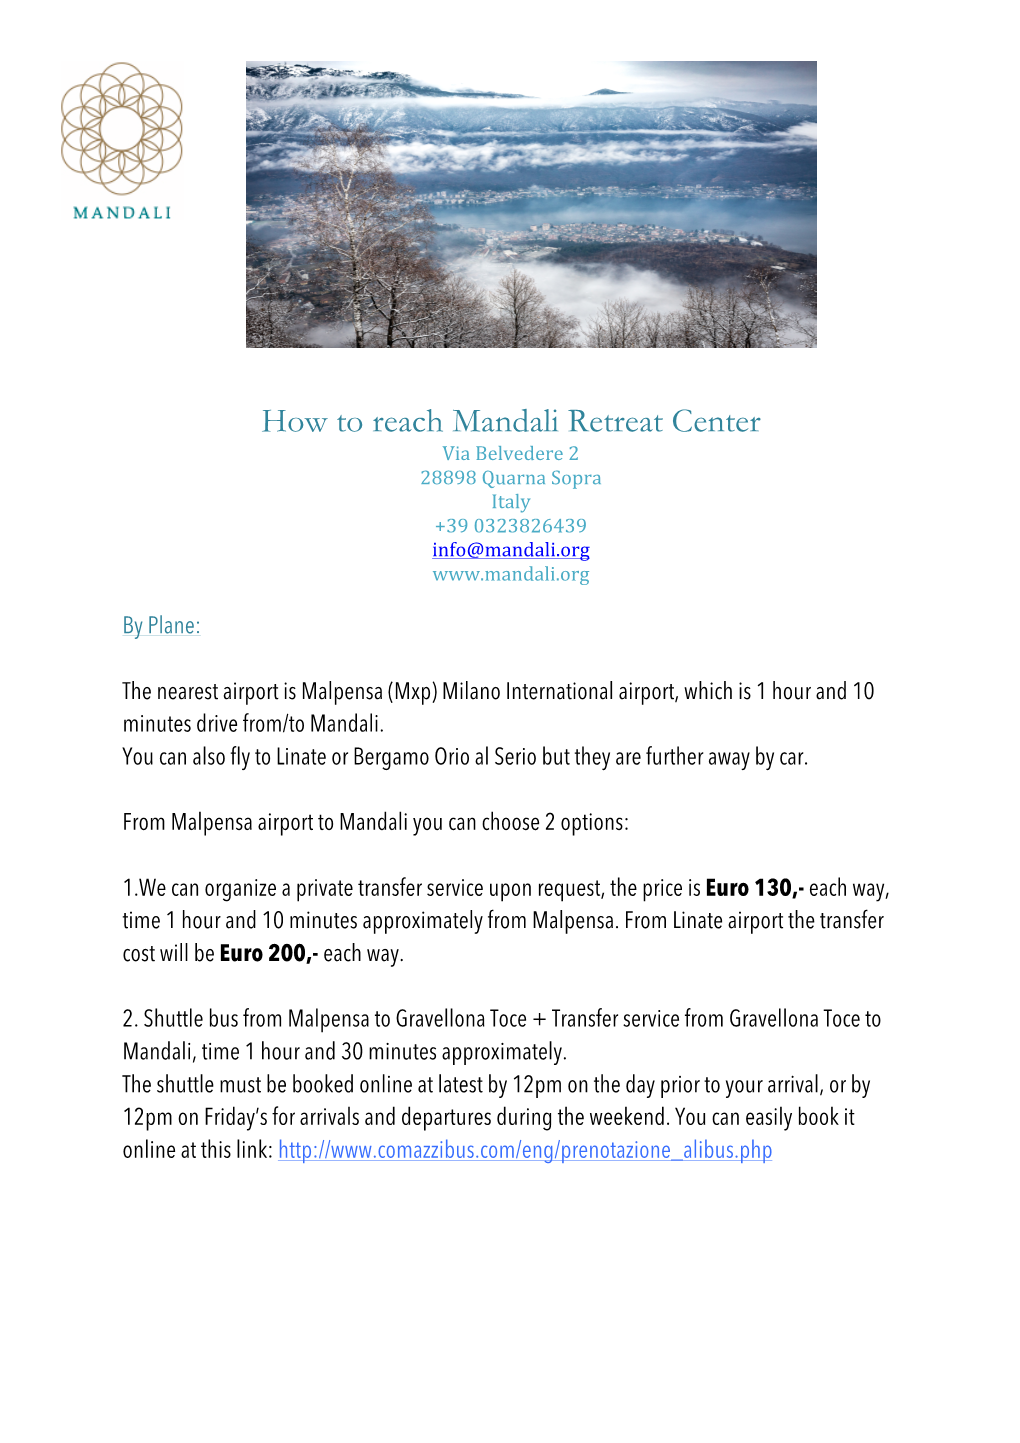 How to Reach Mandali Retreat Center Via Belvedere 2 28898 Quarna Sopra Italy +39 0323826439 Info@Mandali.Org